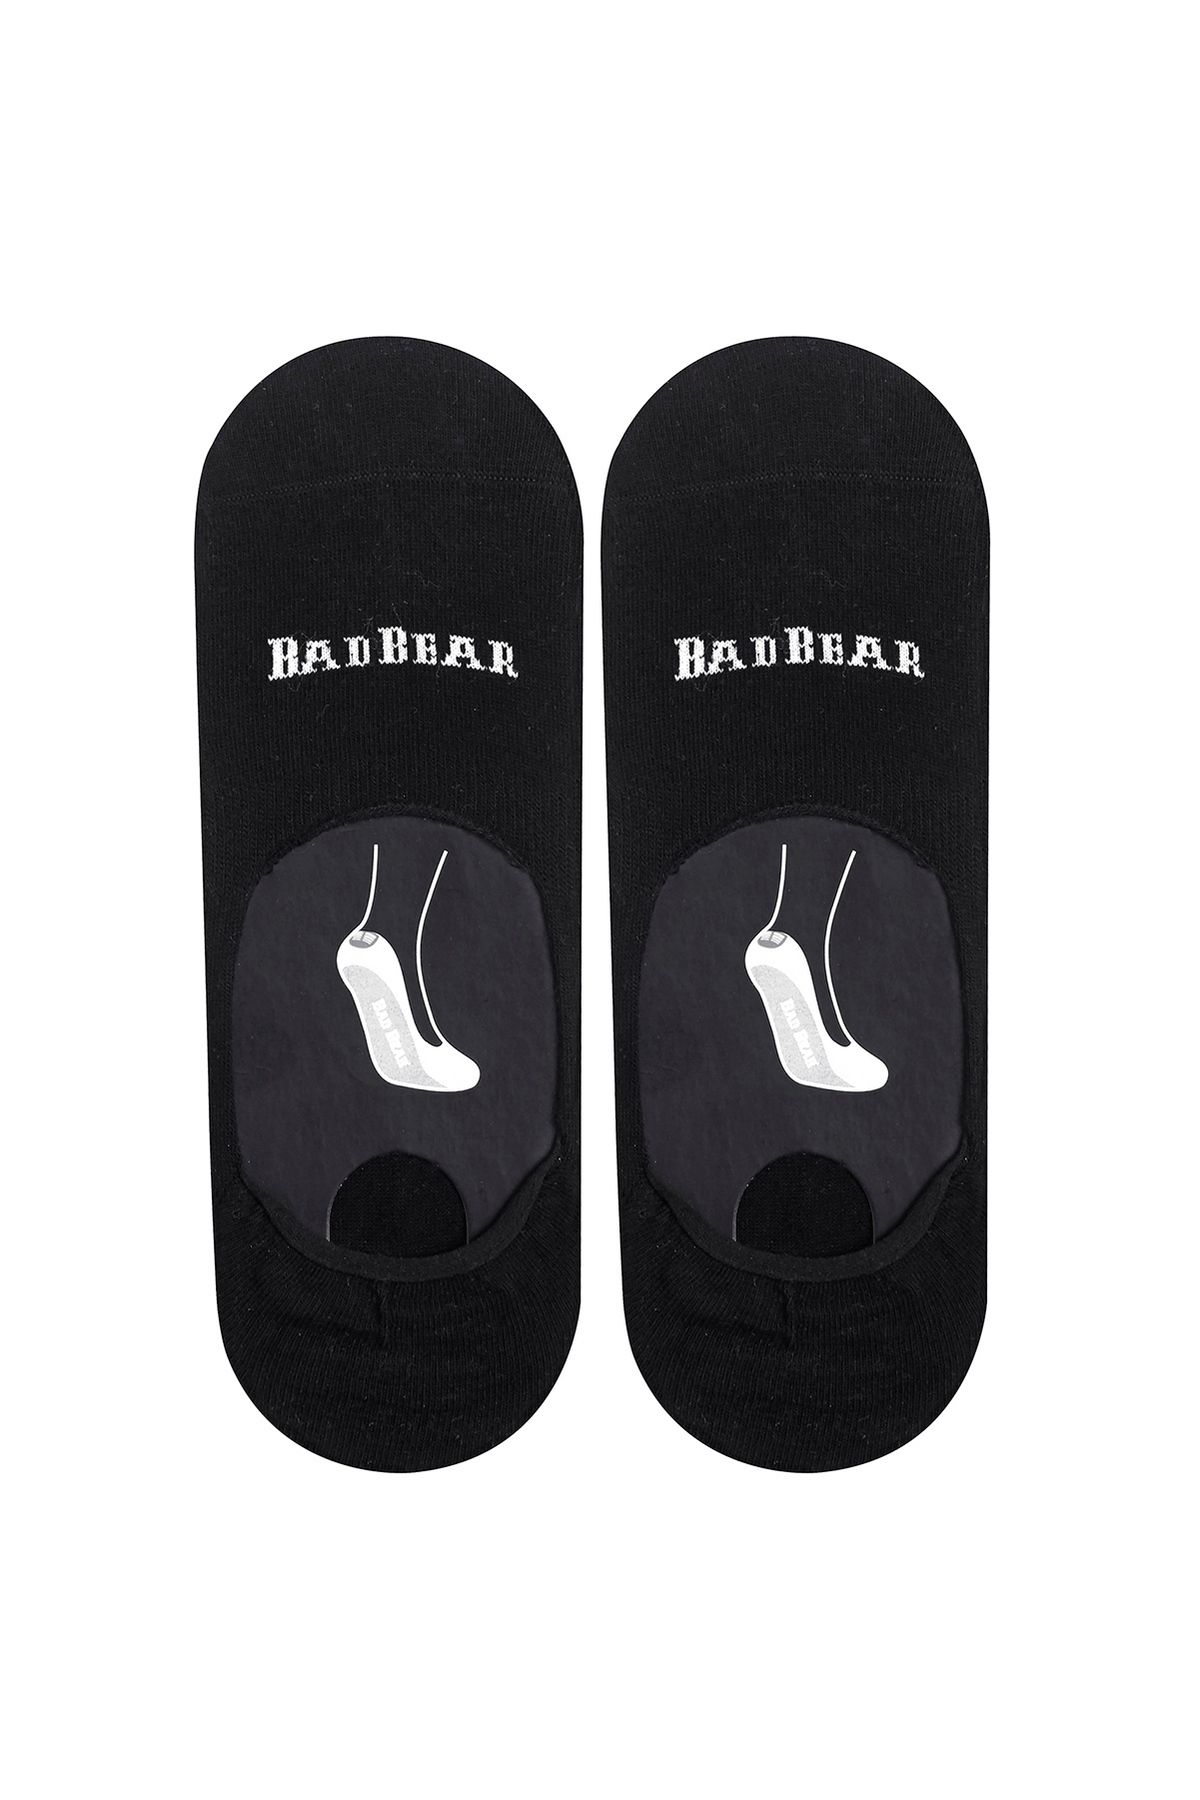 Bad Bear 18.01.02.001-c01 Core Zero Erkek Çorap